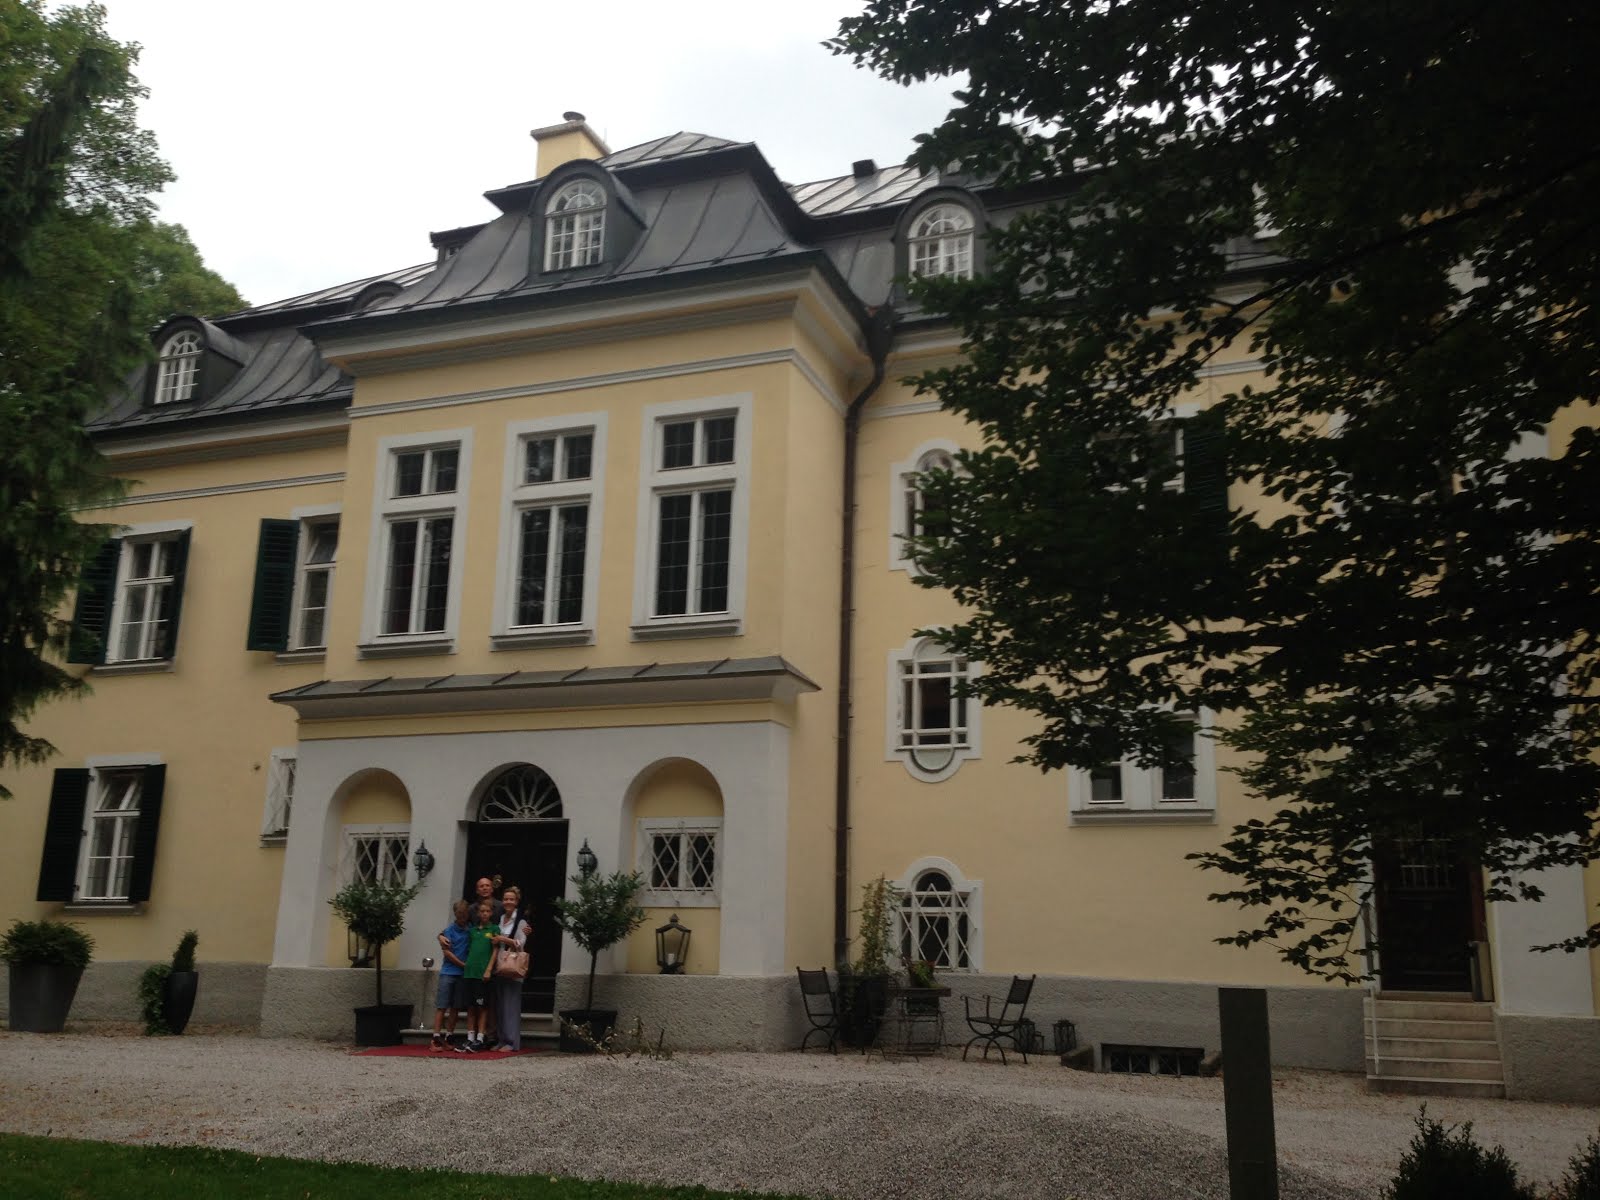 Von Trapp home, Salzburg